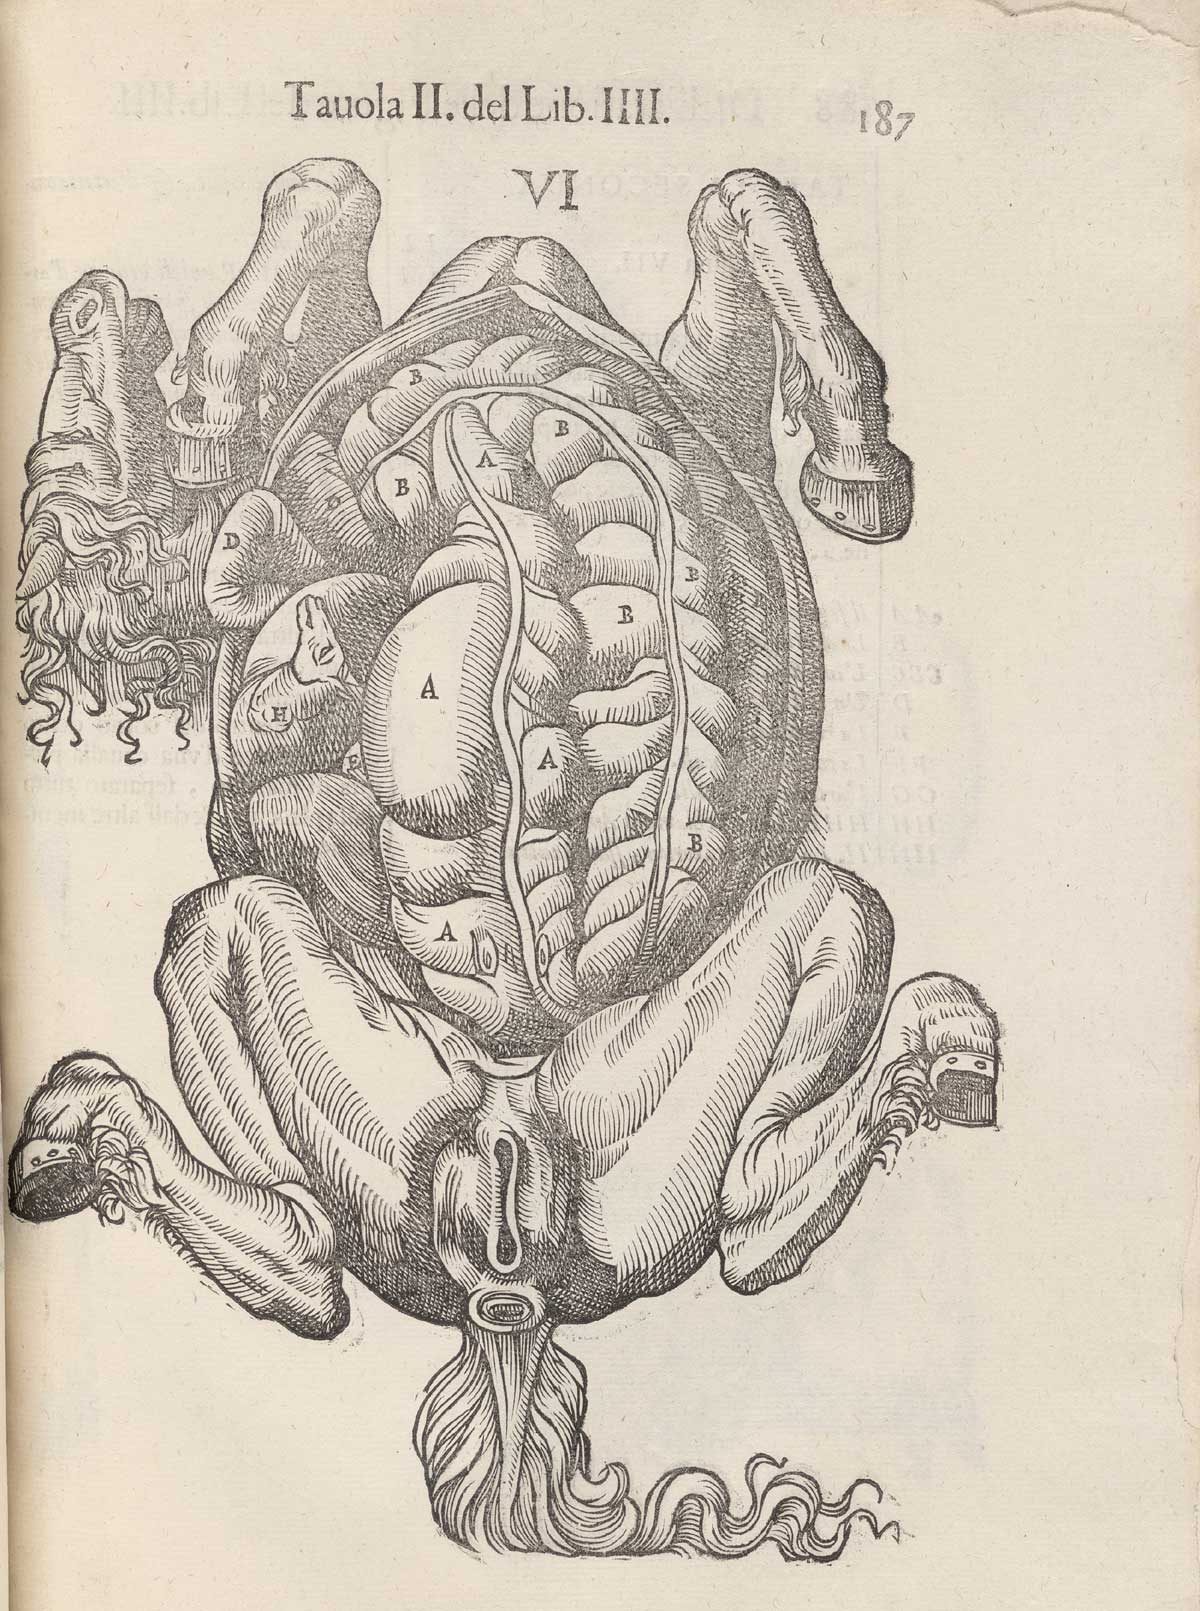 Page 187 of Ruini's Anatomia del cavallo, infermità, et suoi rimedii, featuring the underneath of a horse with the abdominal cavity exposed.